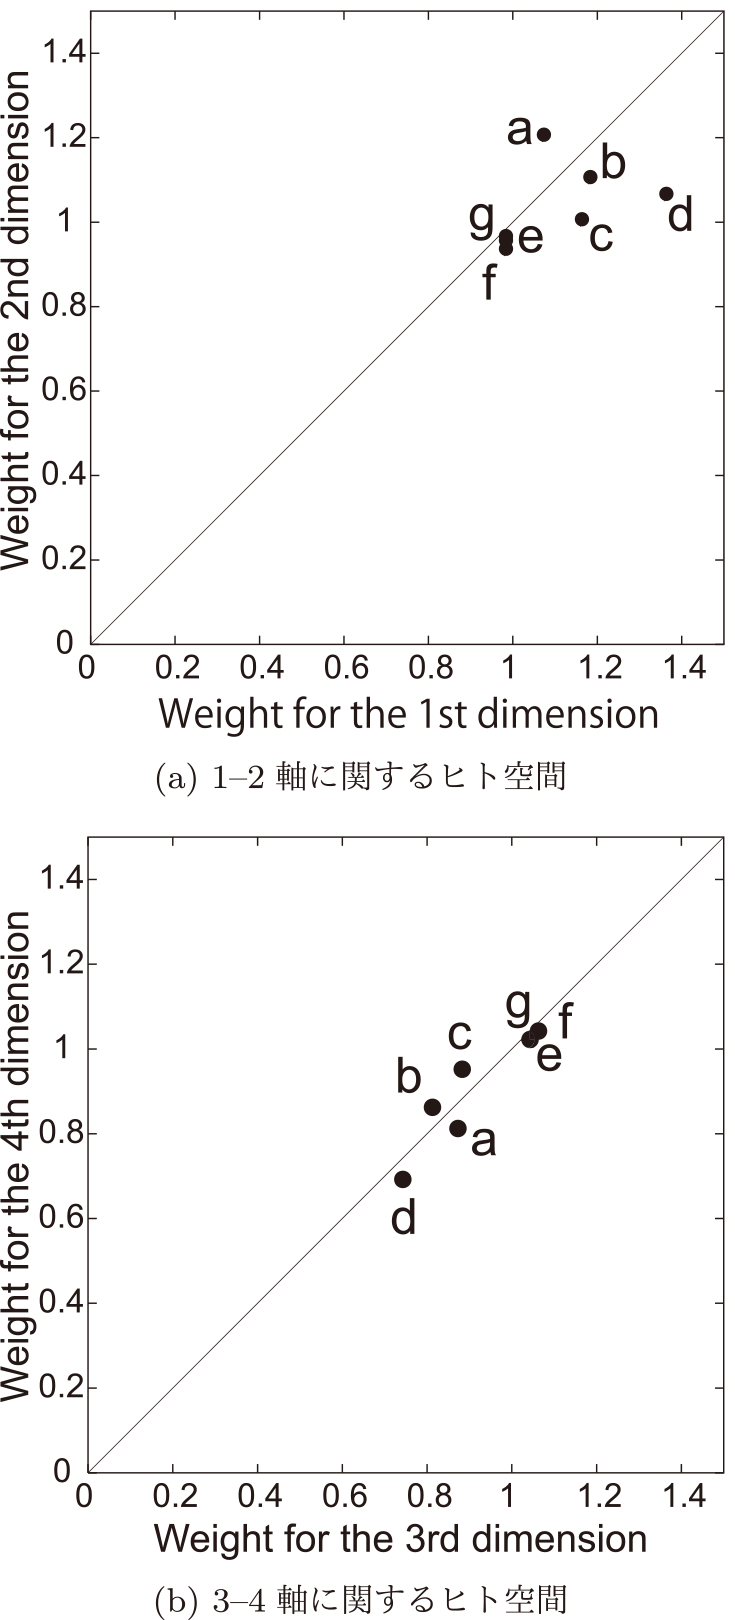 共通モノ空間における類似度評価に関する被験者7名（a～g）の個人差を表すヒト空間　Weights of seven subjects (“a” to “g”) for the four dimensions with respect to the dissimilarity judgements in the common space. (a) Weights of each subject for 1–2 axes. (b) Weights of each subject for 3–4 axes.